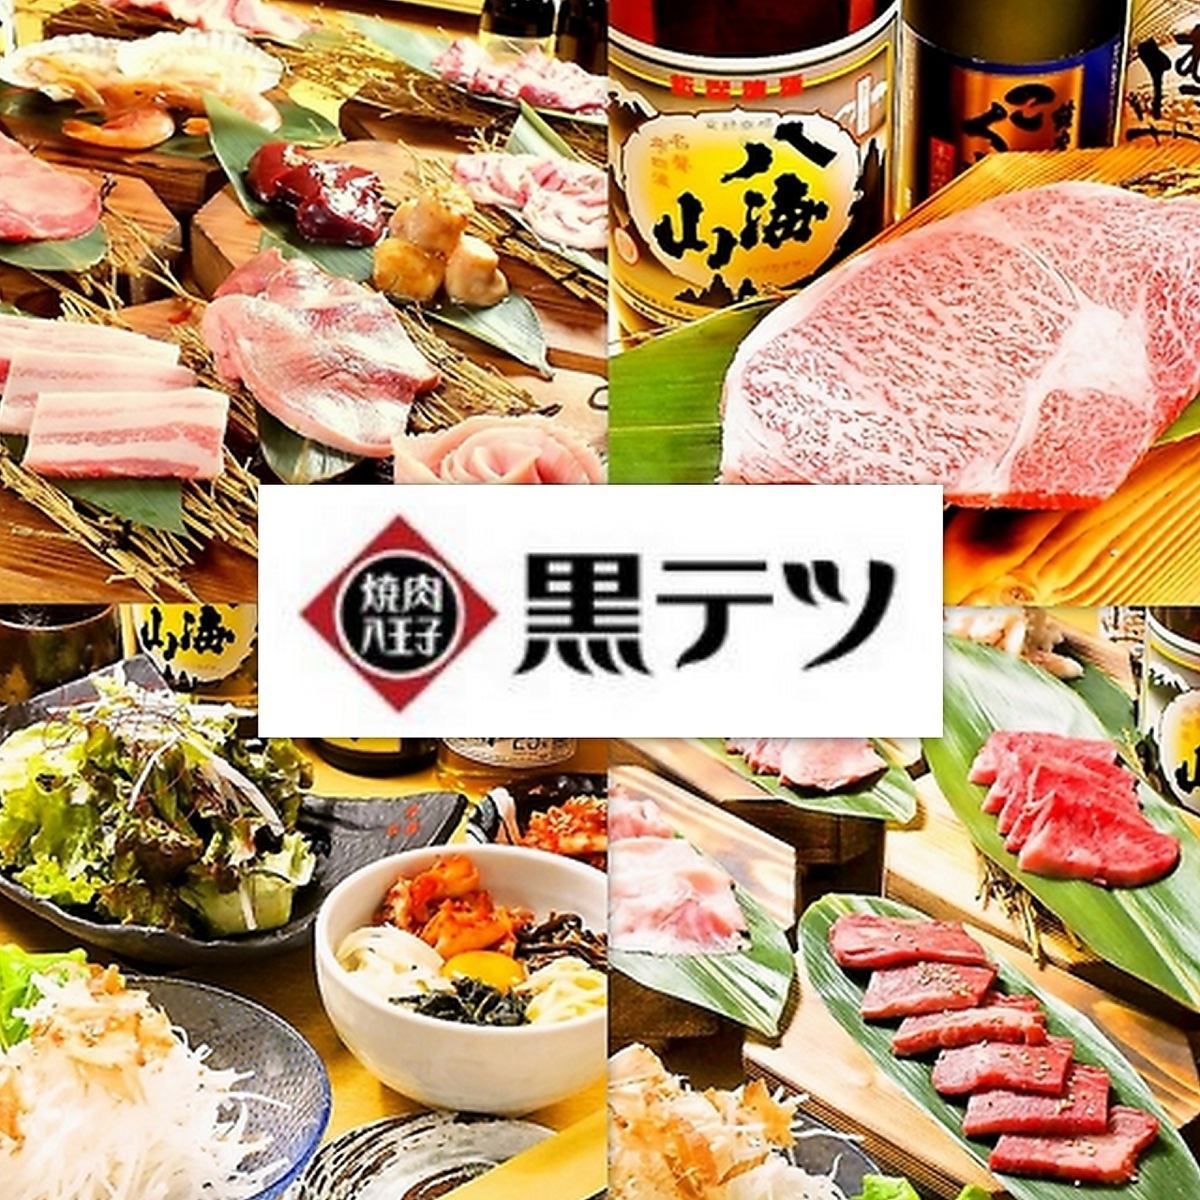 연회에 최적의 쇠고기 포함 먹고 마시는 4000 엔 (세금 포함)